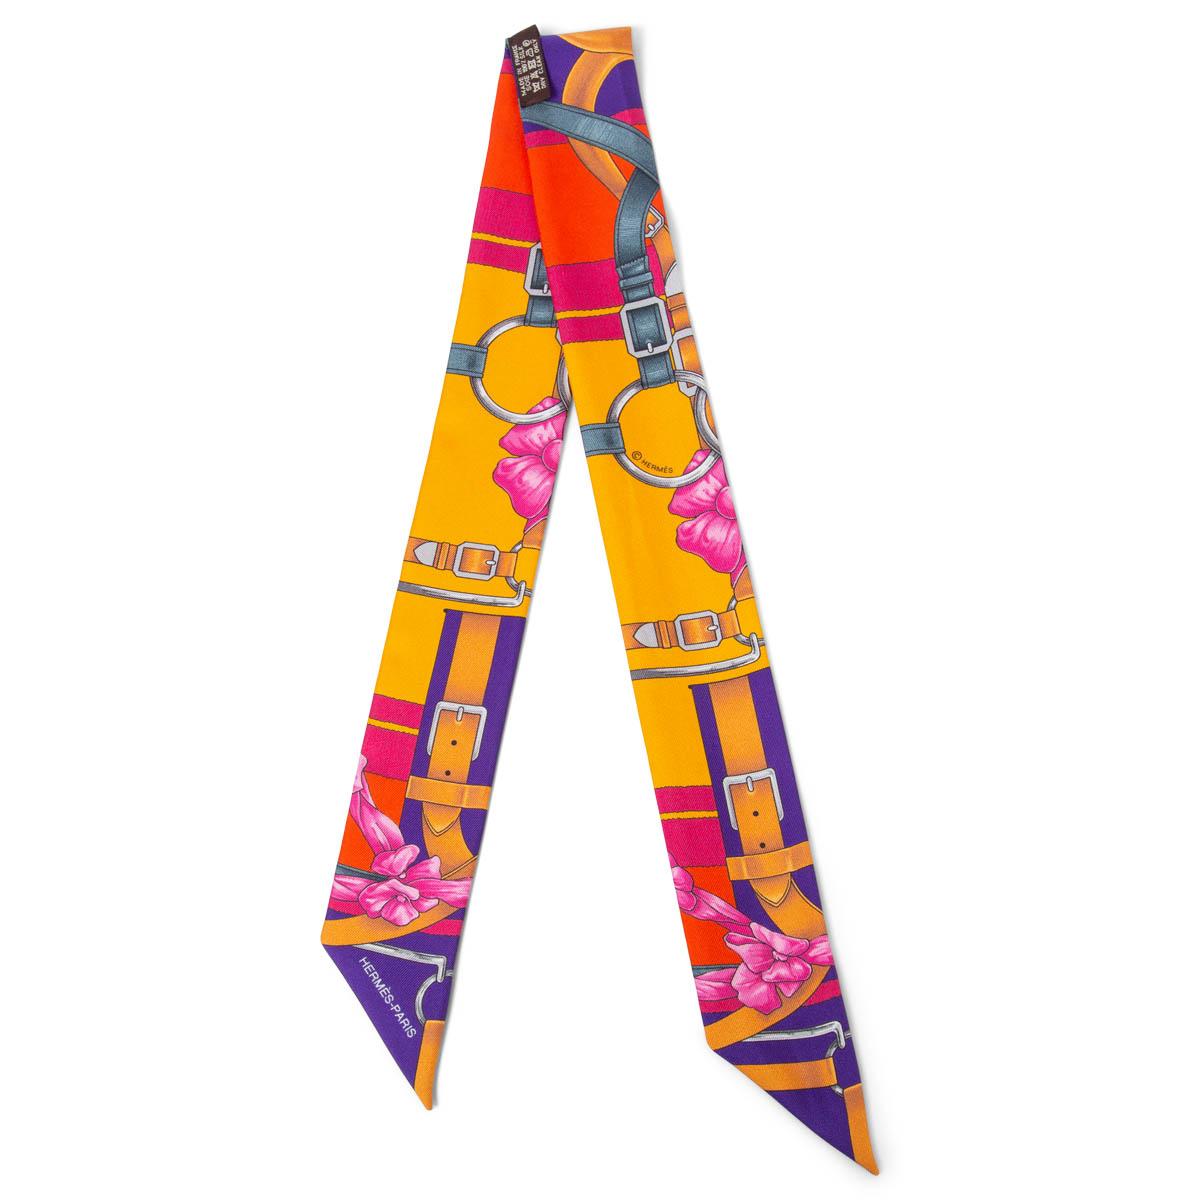 100% authentischer Hermès Grand Manege Fleuri Twilly Schal in orange, rot, lila, rosa und petrolfarbener Seide (100%). Wurde getragen und ist in ausgezeichnetem Zustand. 

Messungen
Breite	5cm (2in)
Länge	86cm (33.5in)

Alle unsere Angebote umfassen